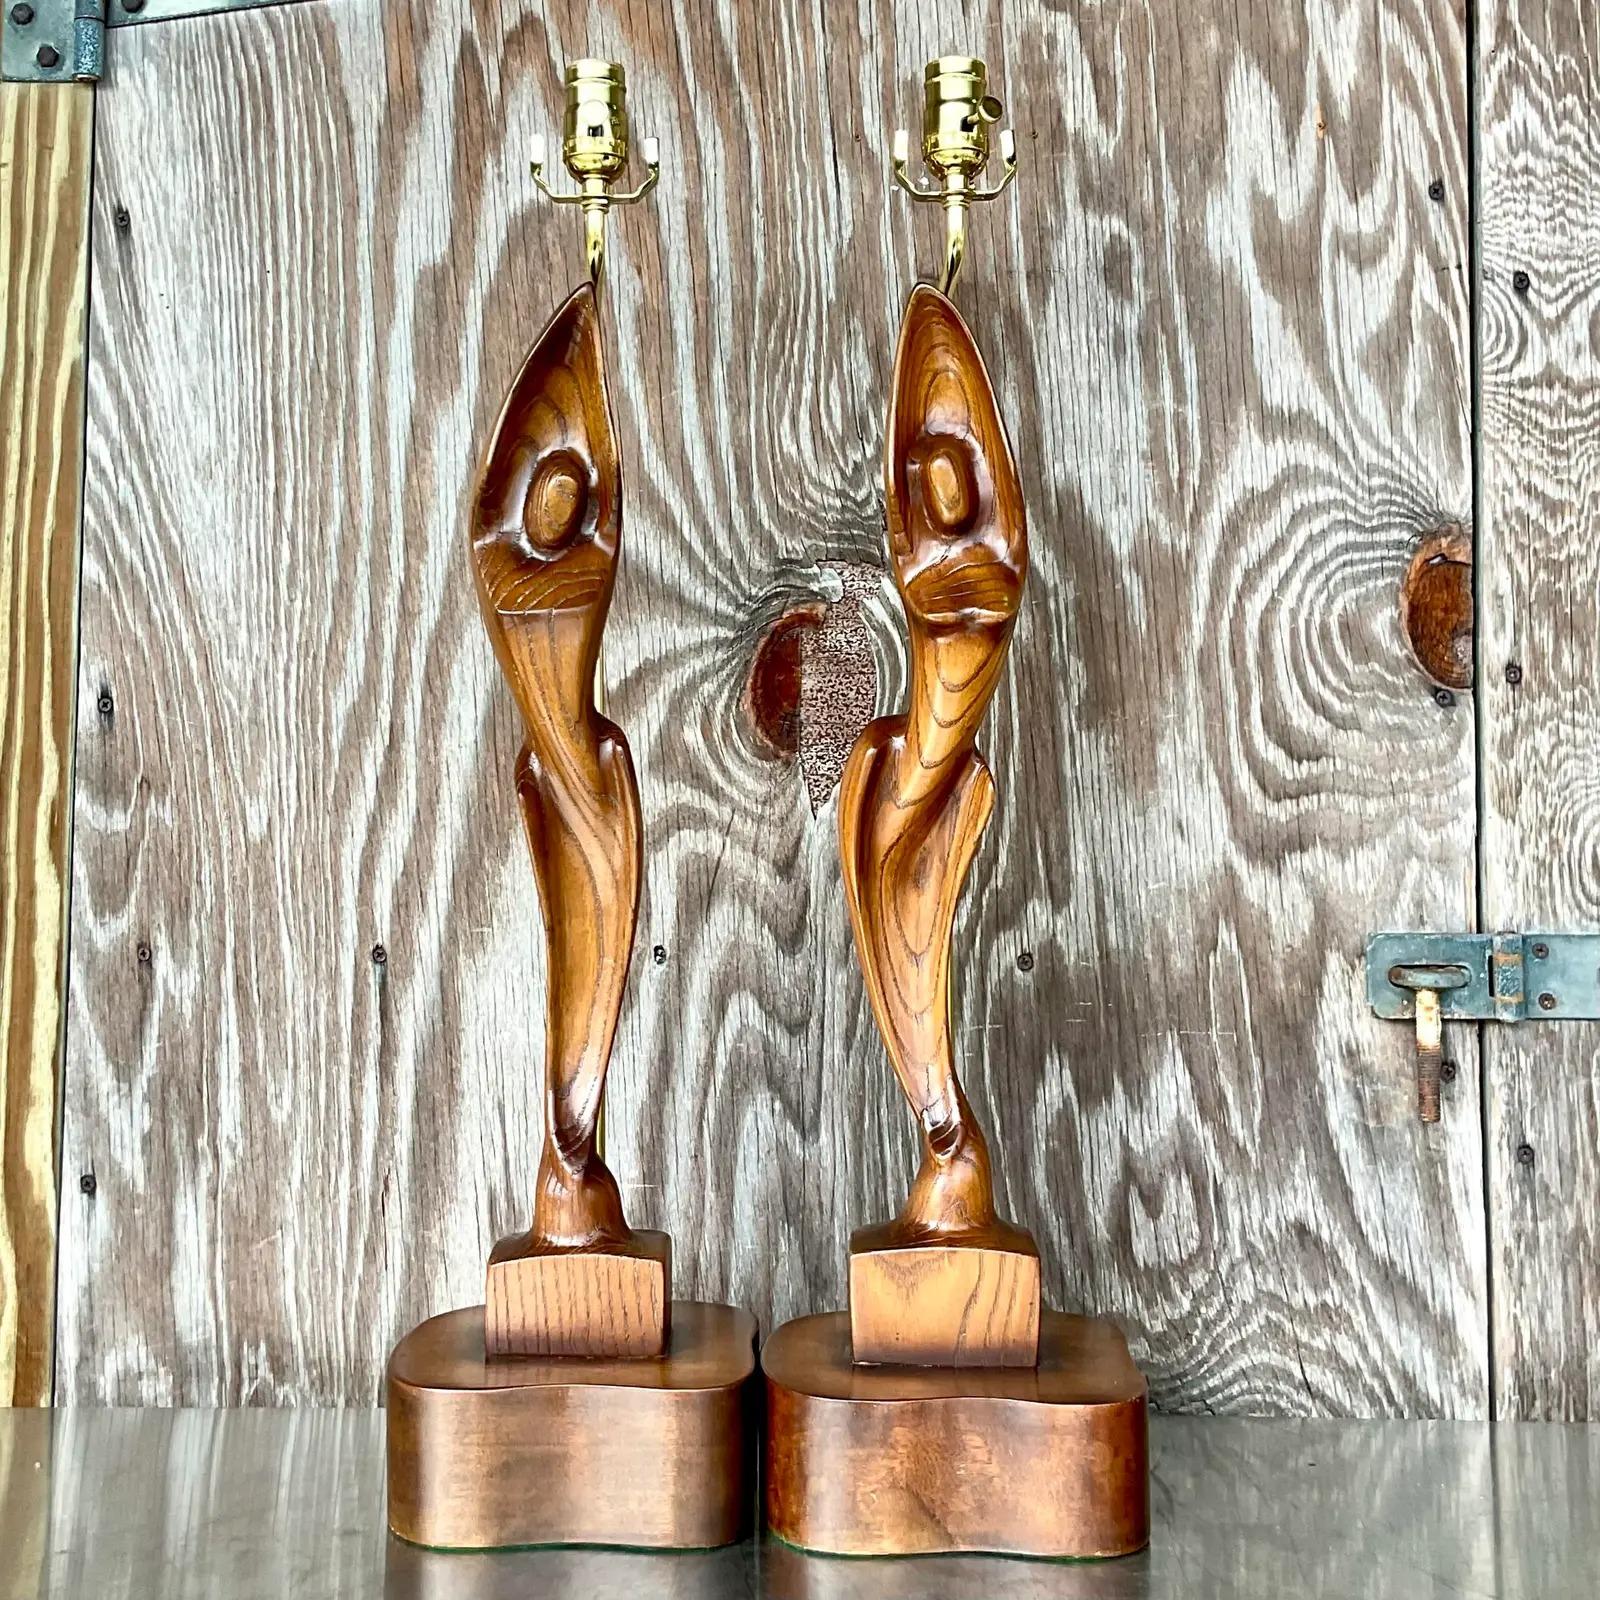 Ein fantastisches Paar MCM-Tischlampen. Hergestellt von dem kultigen Yasha Heifetz. Schöne skulpturale Figuren auf erhöhten Holzsockeln. Vollständig restauriert mit neuer Verkabelung und Hardware. Erworben aus einem Nachlass in Palm Beach.